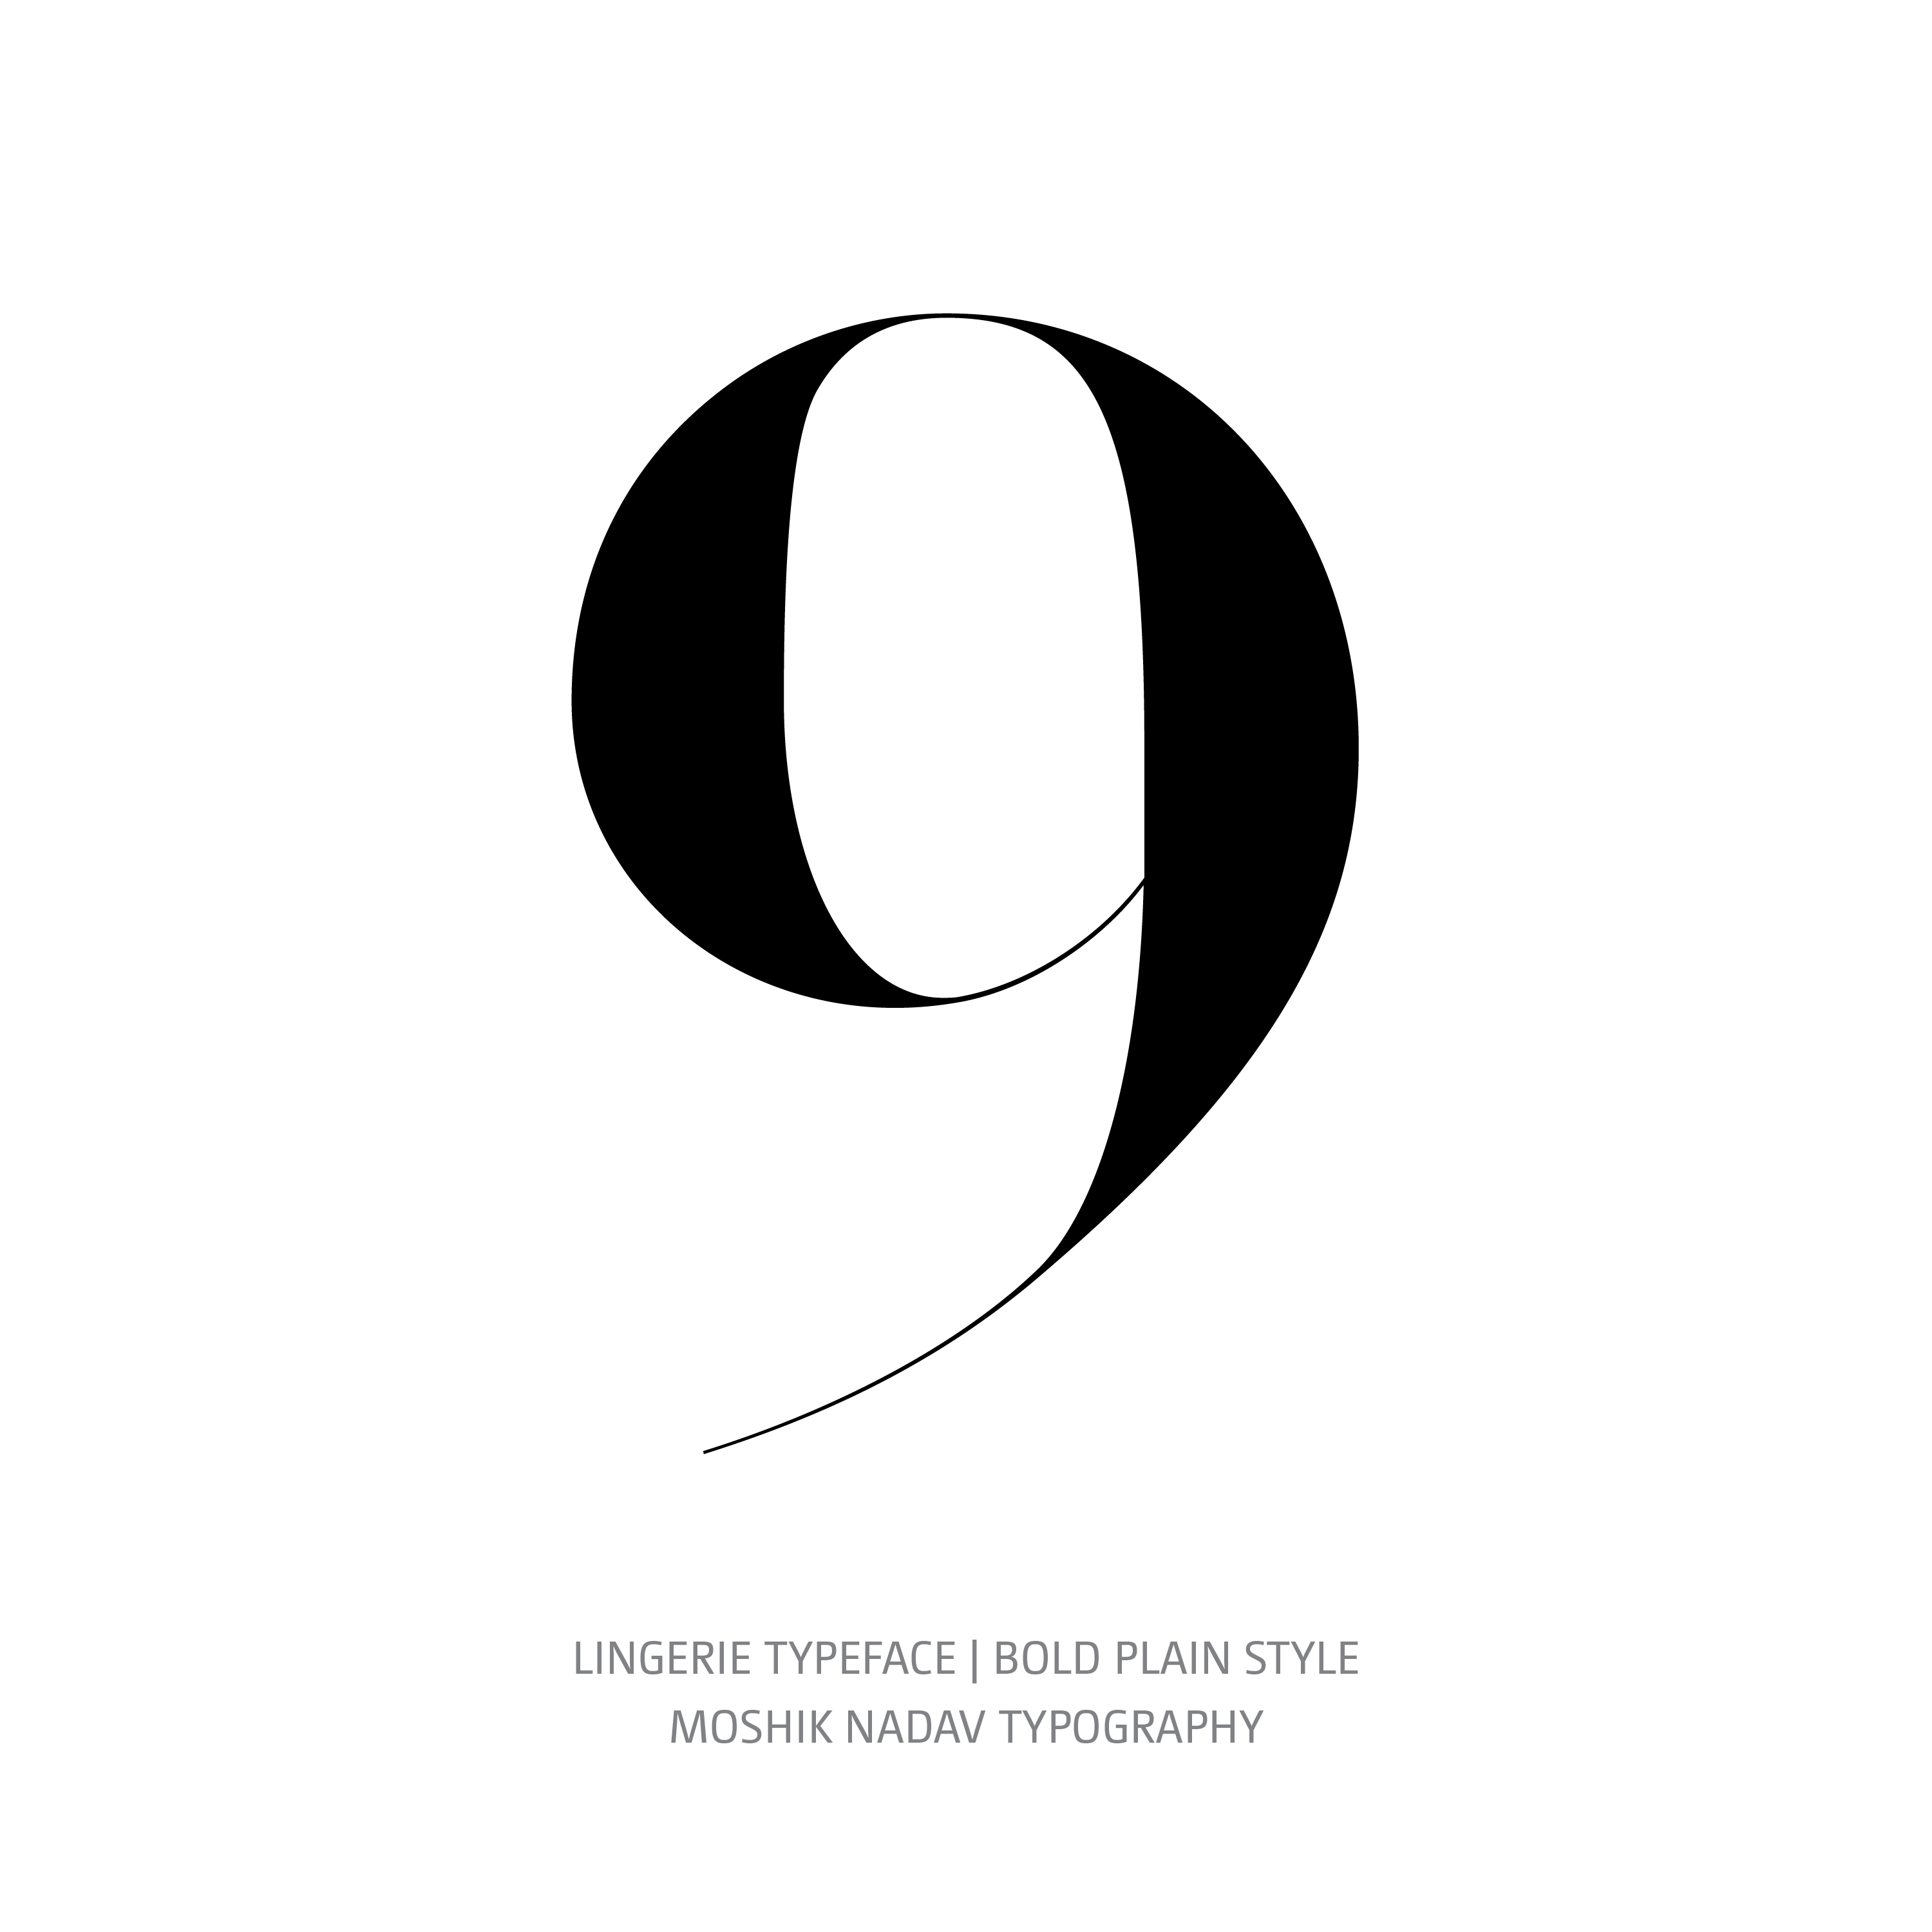 Lingerie Typeface Bold Plain 9